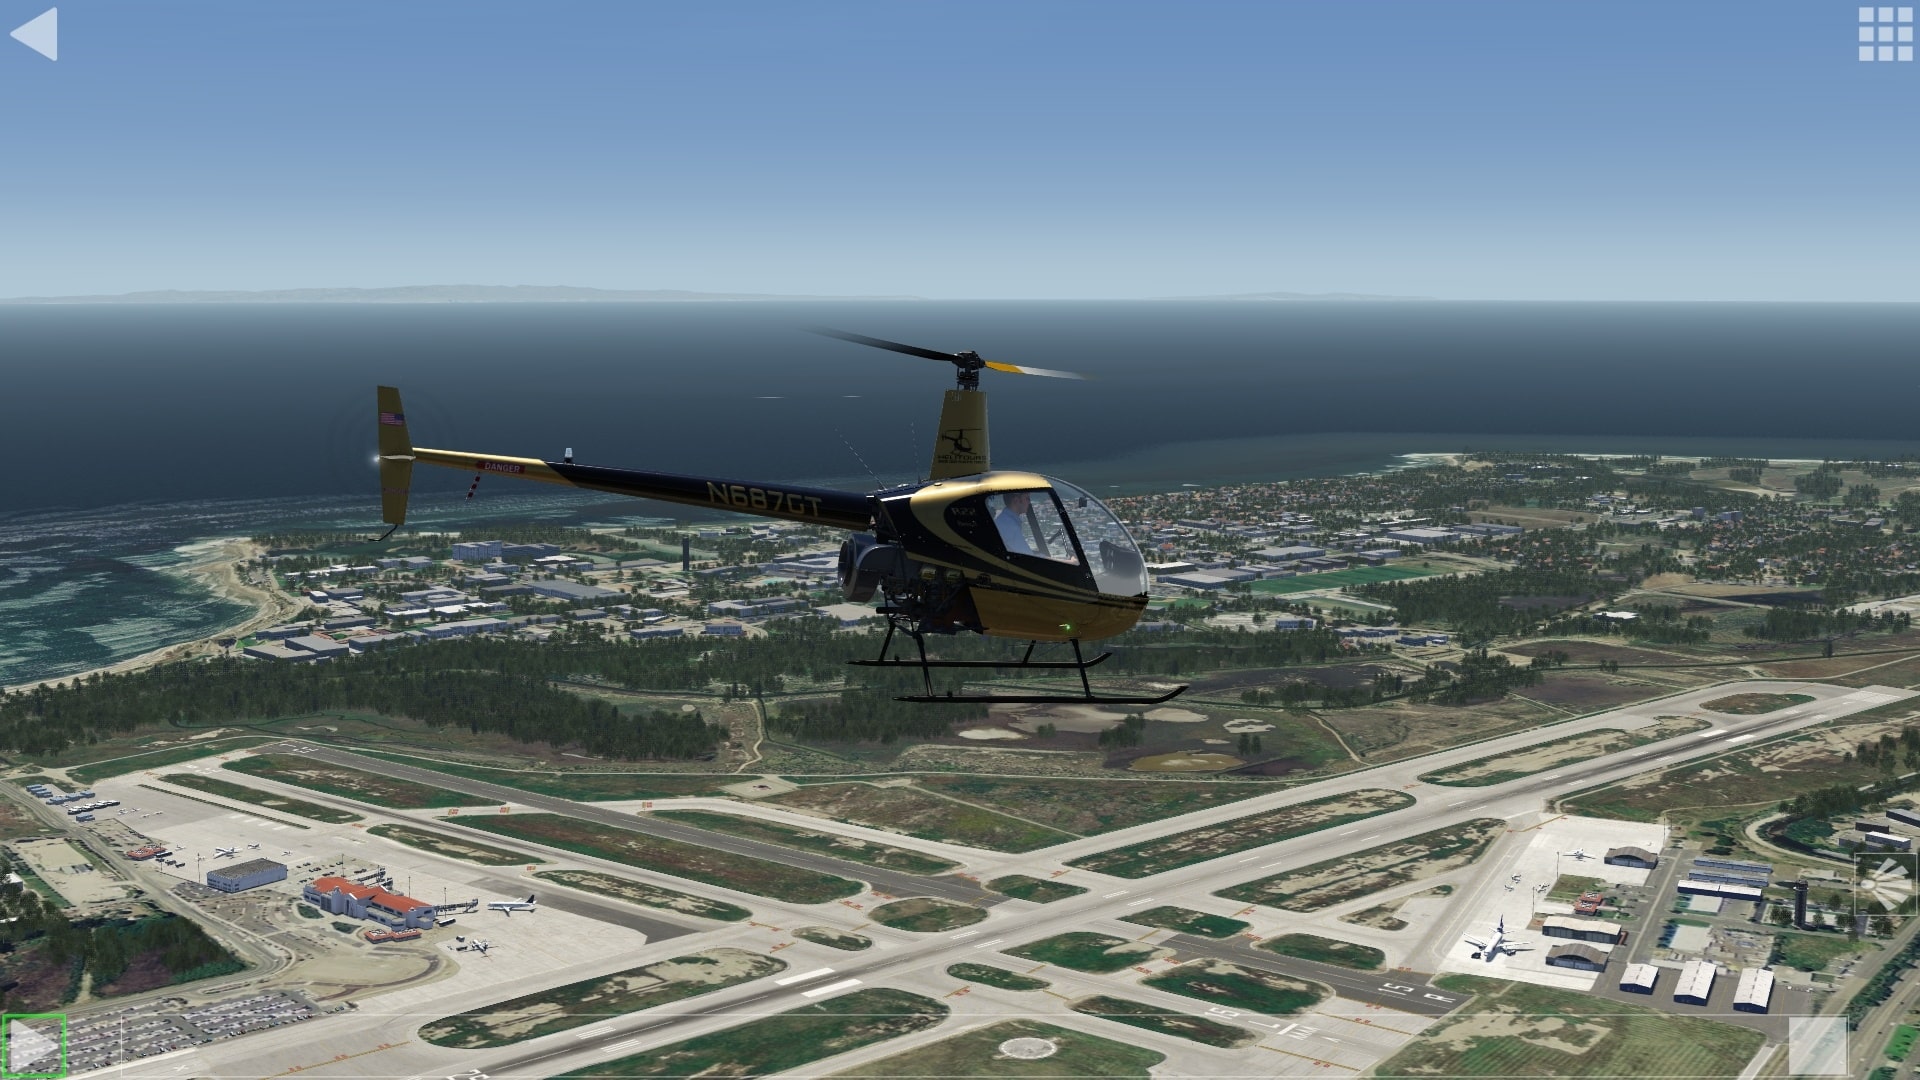 (Odtworzenie mojego pierwszego symulowanego lotu helikopterem od czasów PlayStation 1. Nadal jestem dumny. Model lotu Robinsona R22 w wersji Aerofly FS jest również wykorzystywany w Szwajcarii w certyfikowanym przez EASA urządzeniu treningowym do symulacji lotu)